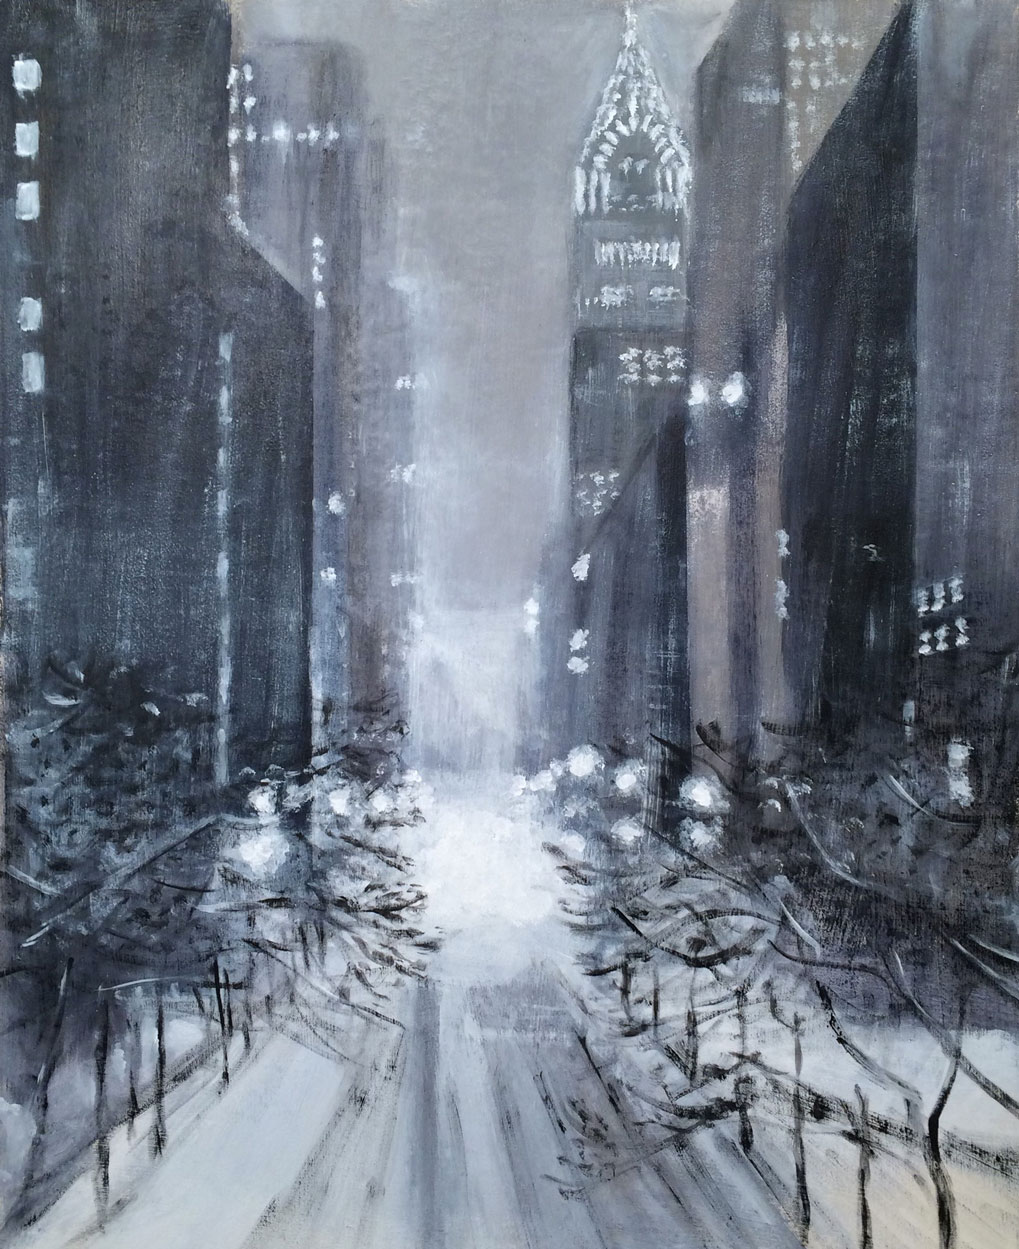 N°2149 - Snowzilla in NYC - Acrylique sur toile - 92 x 73 cm - 29 janvier 2016